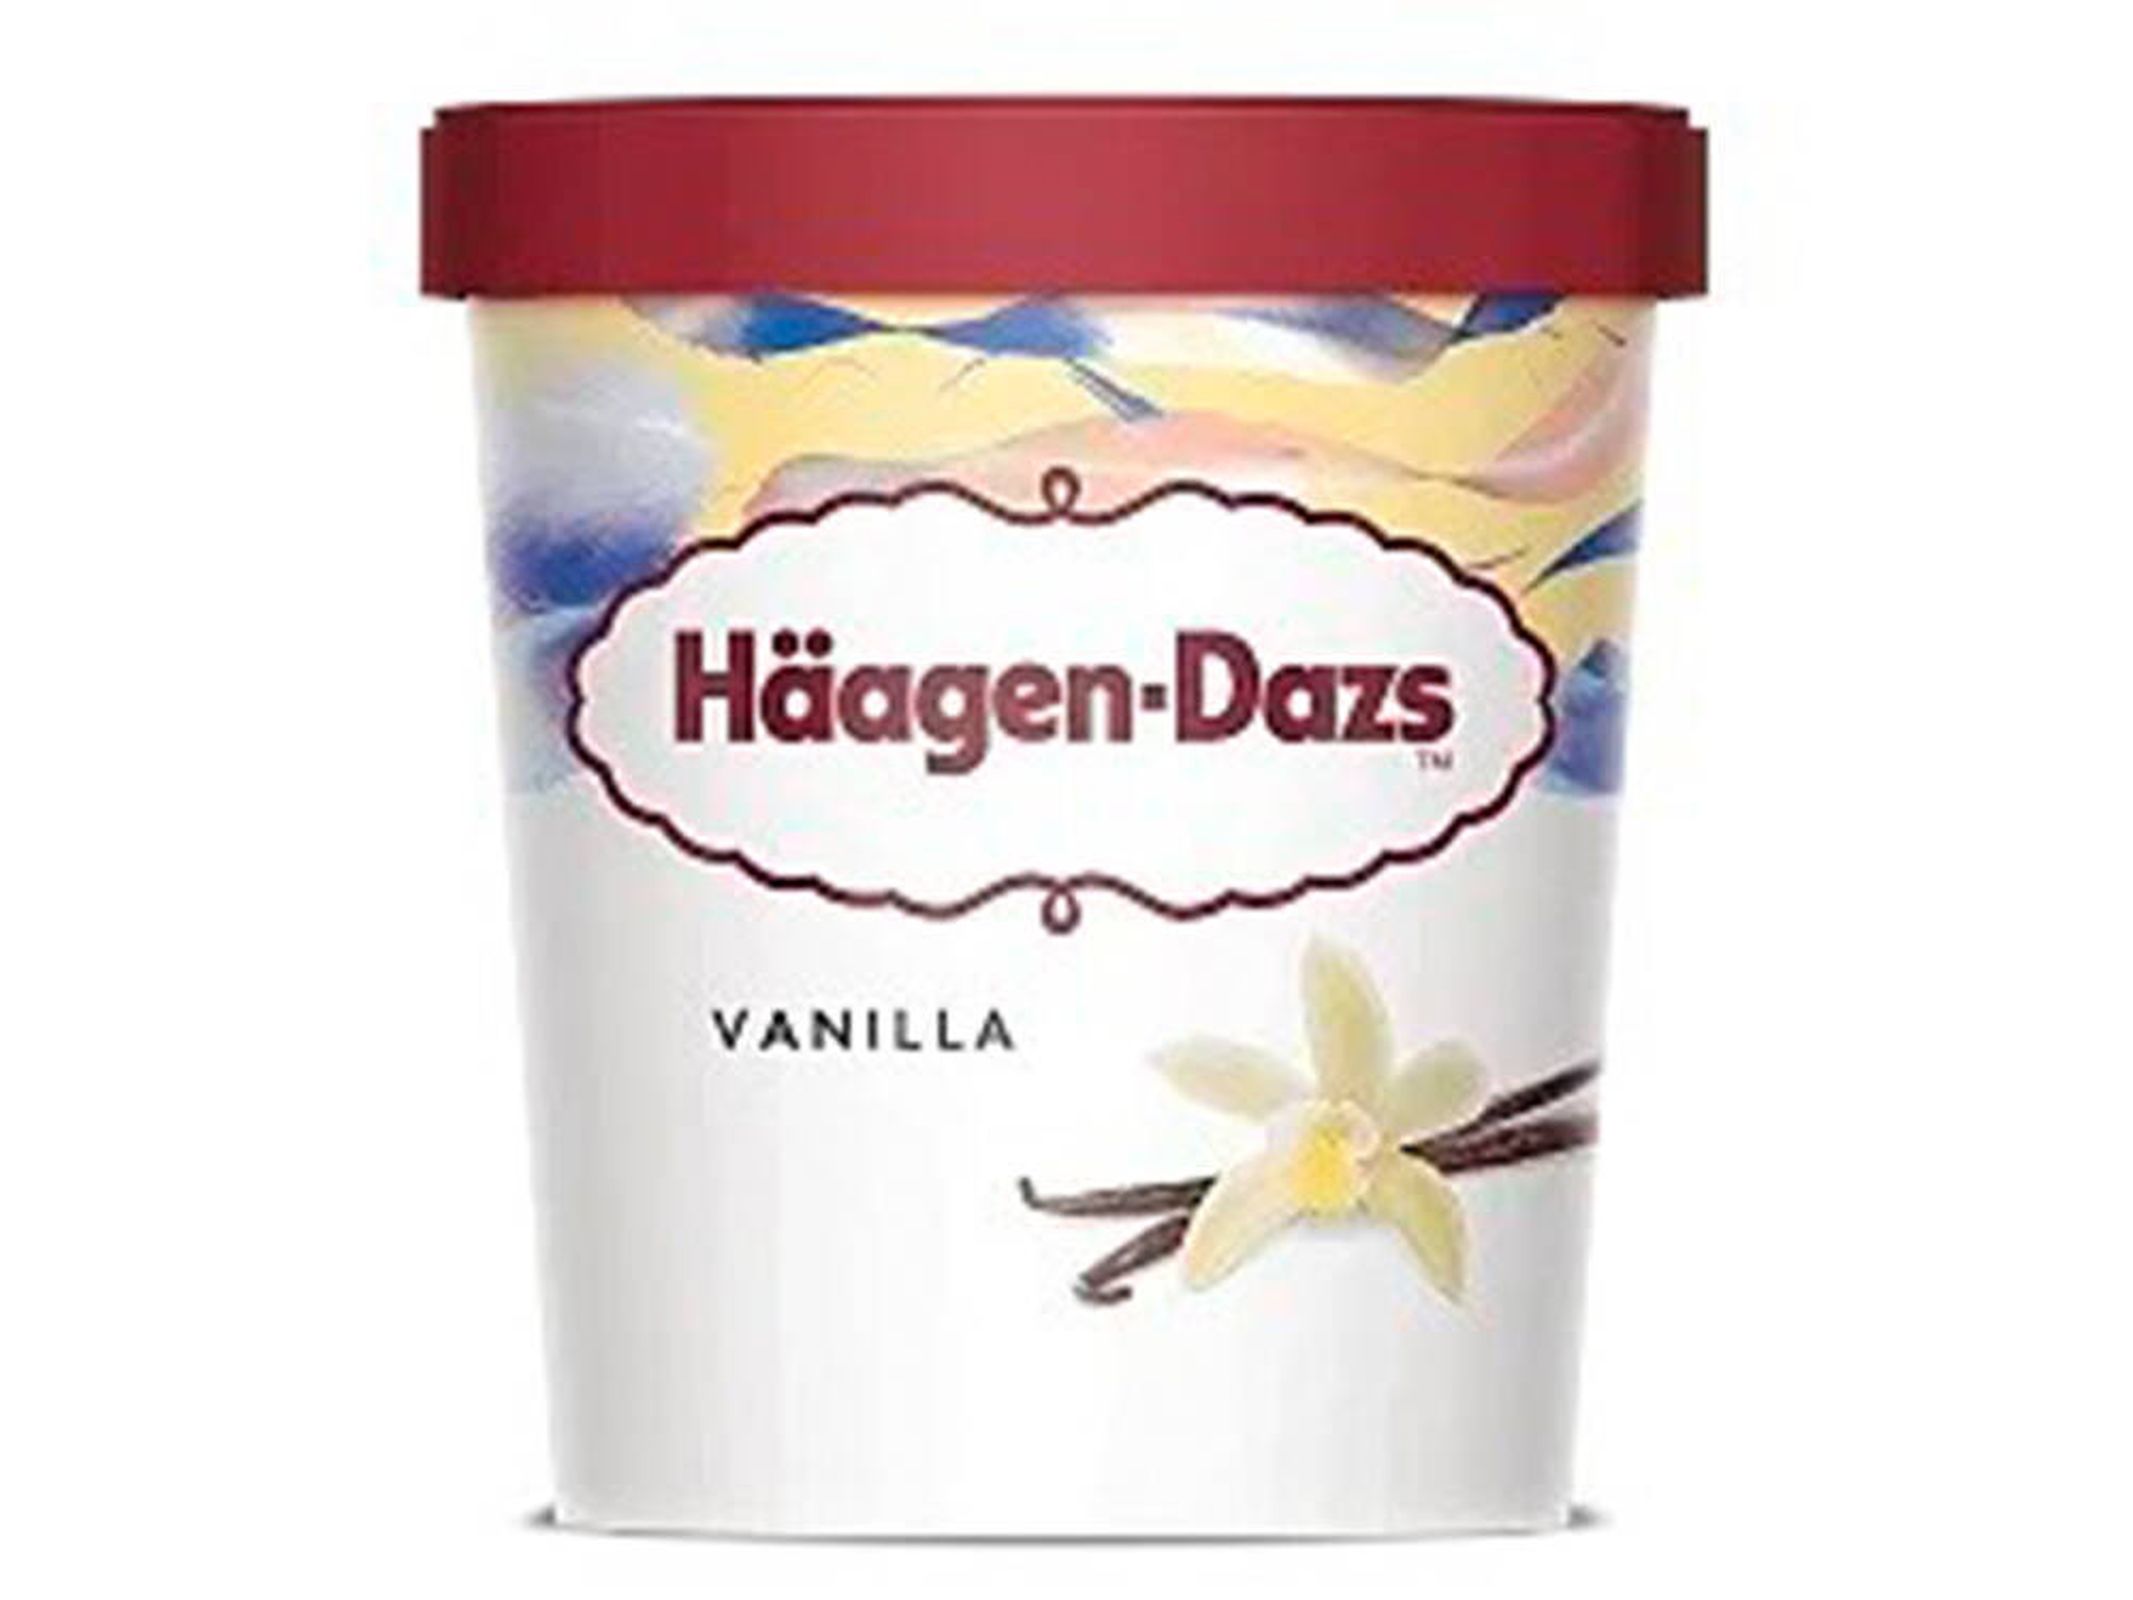 Alerta alimentaria por presencia de óxido de etileno en los helados de Häagen-Dazs (Häagen-Dazs)